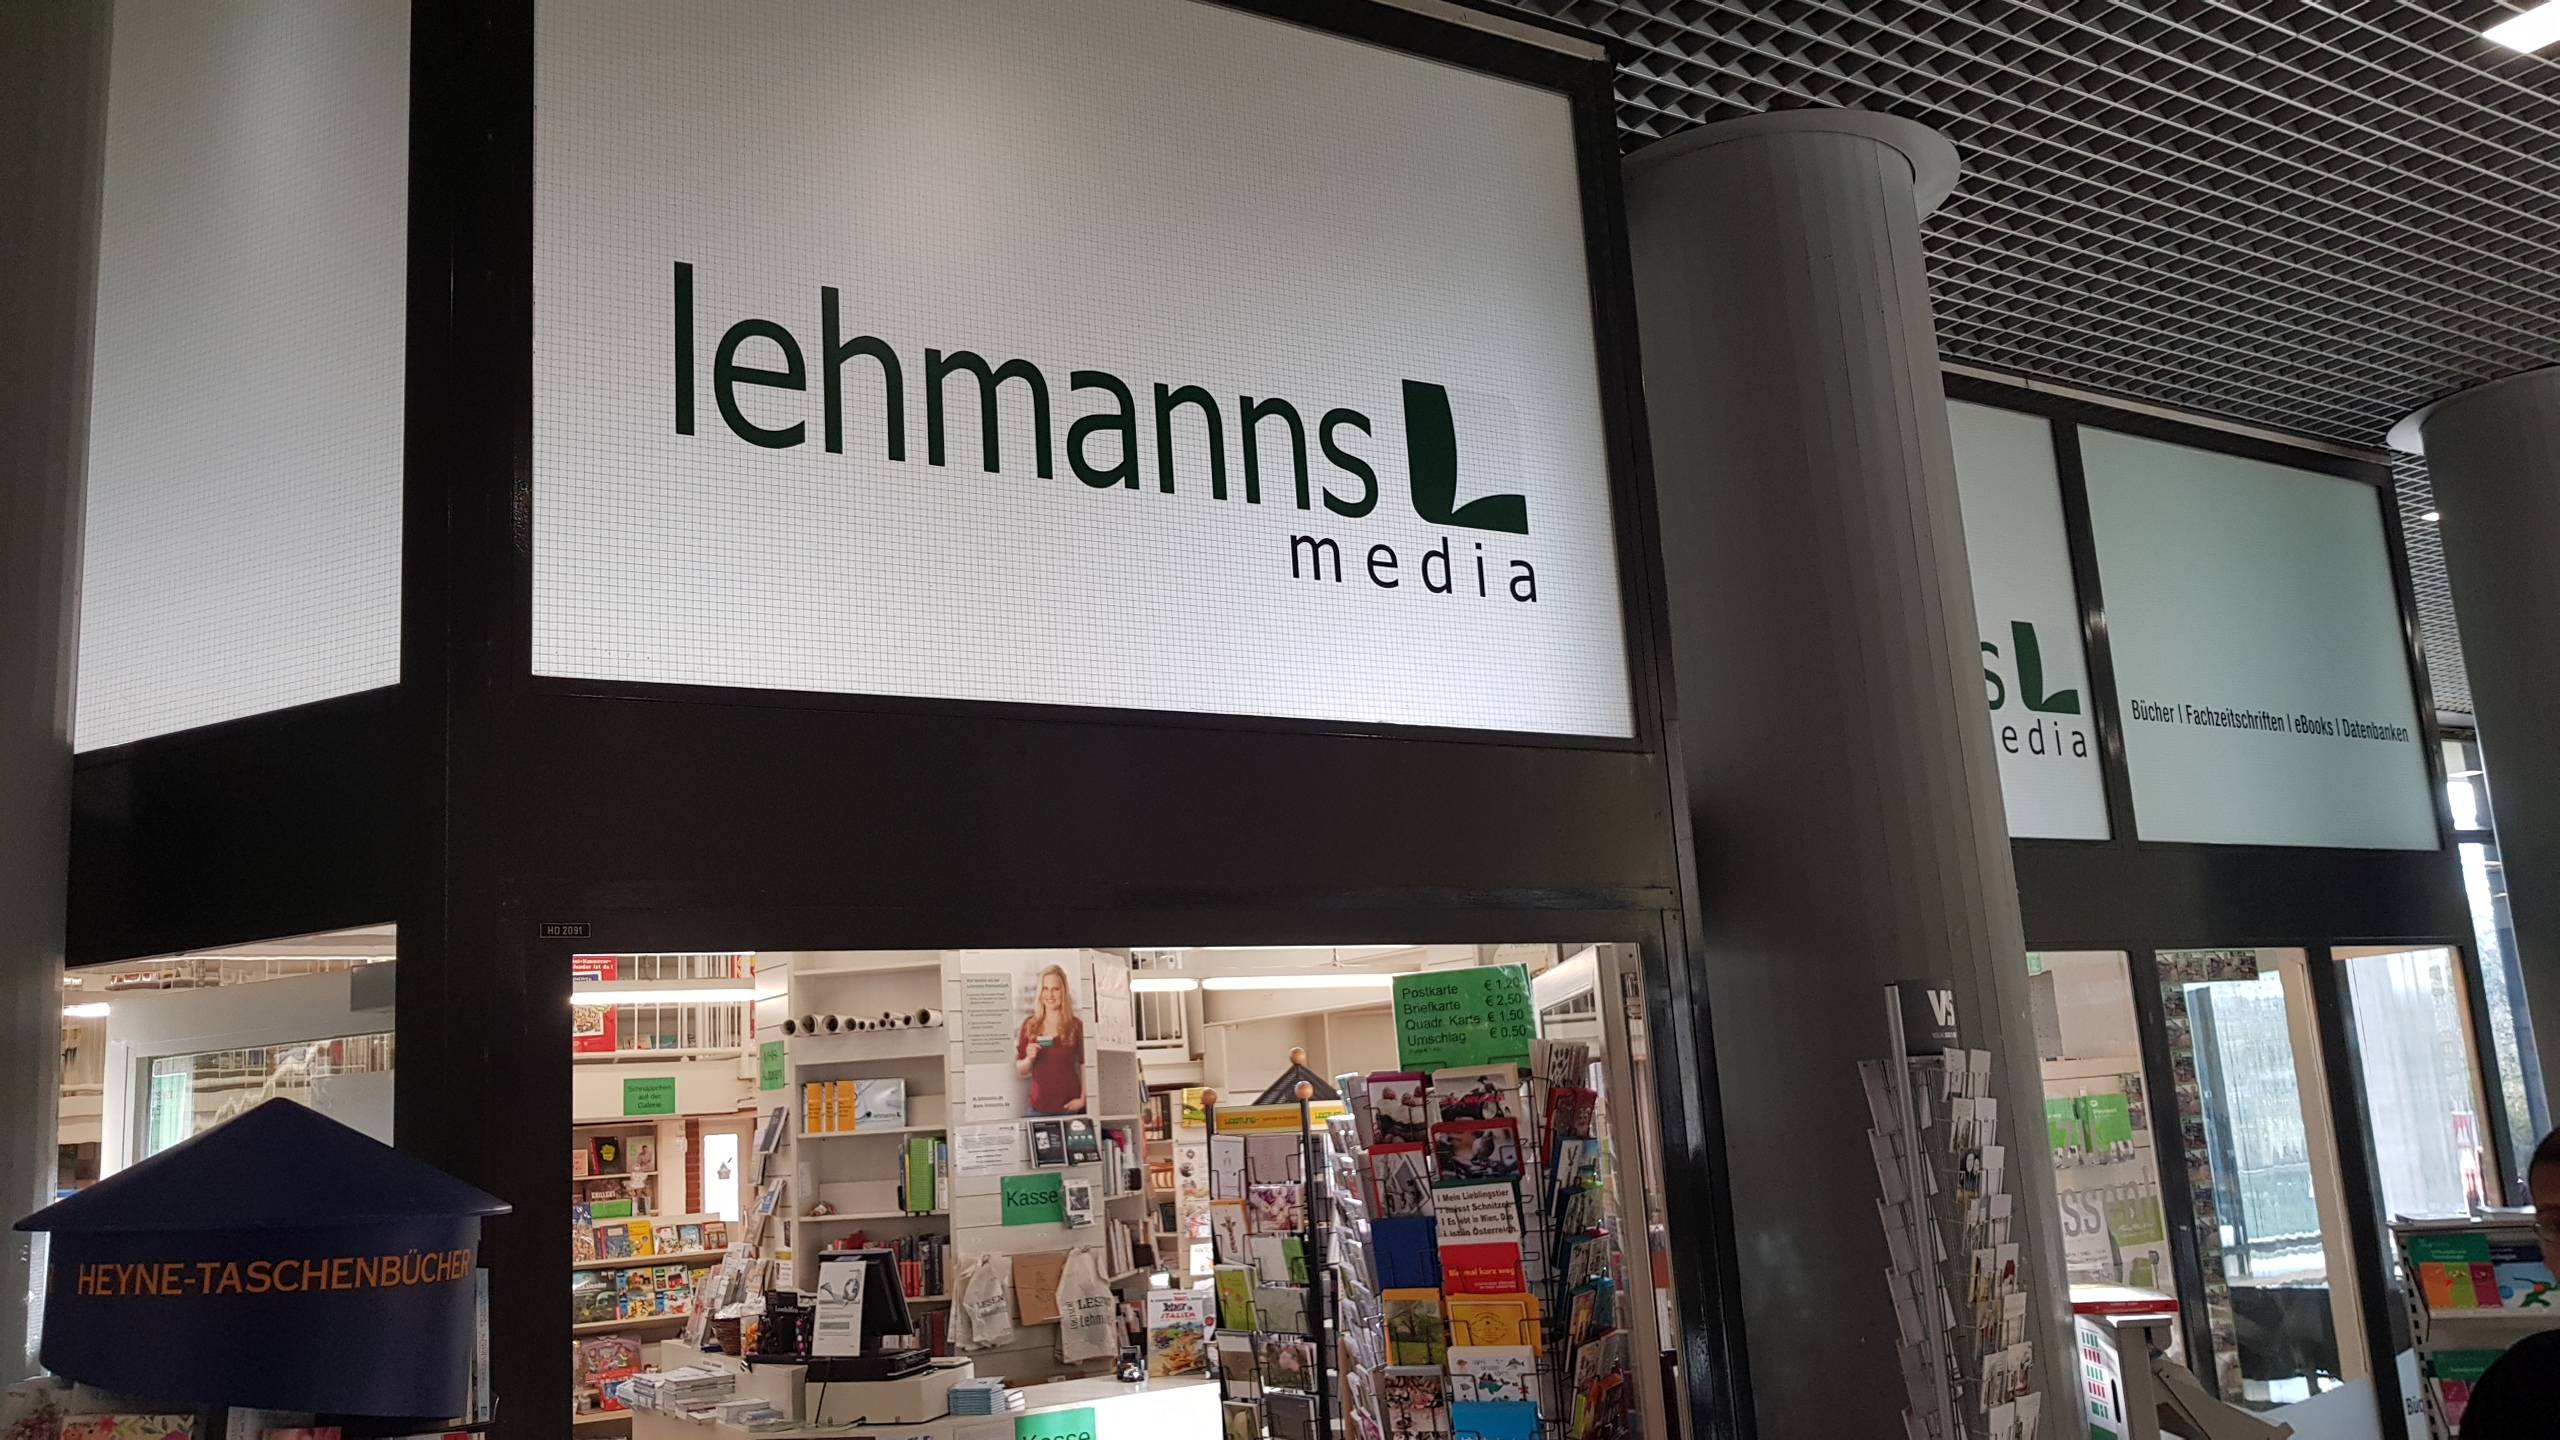 Bild 2 Lehmanns Fachbuchhandlung GmbH in Hannover